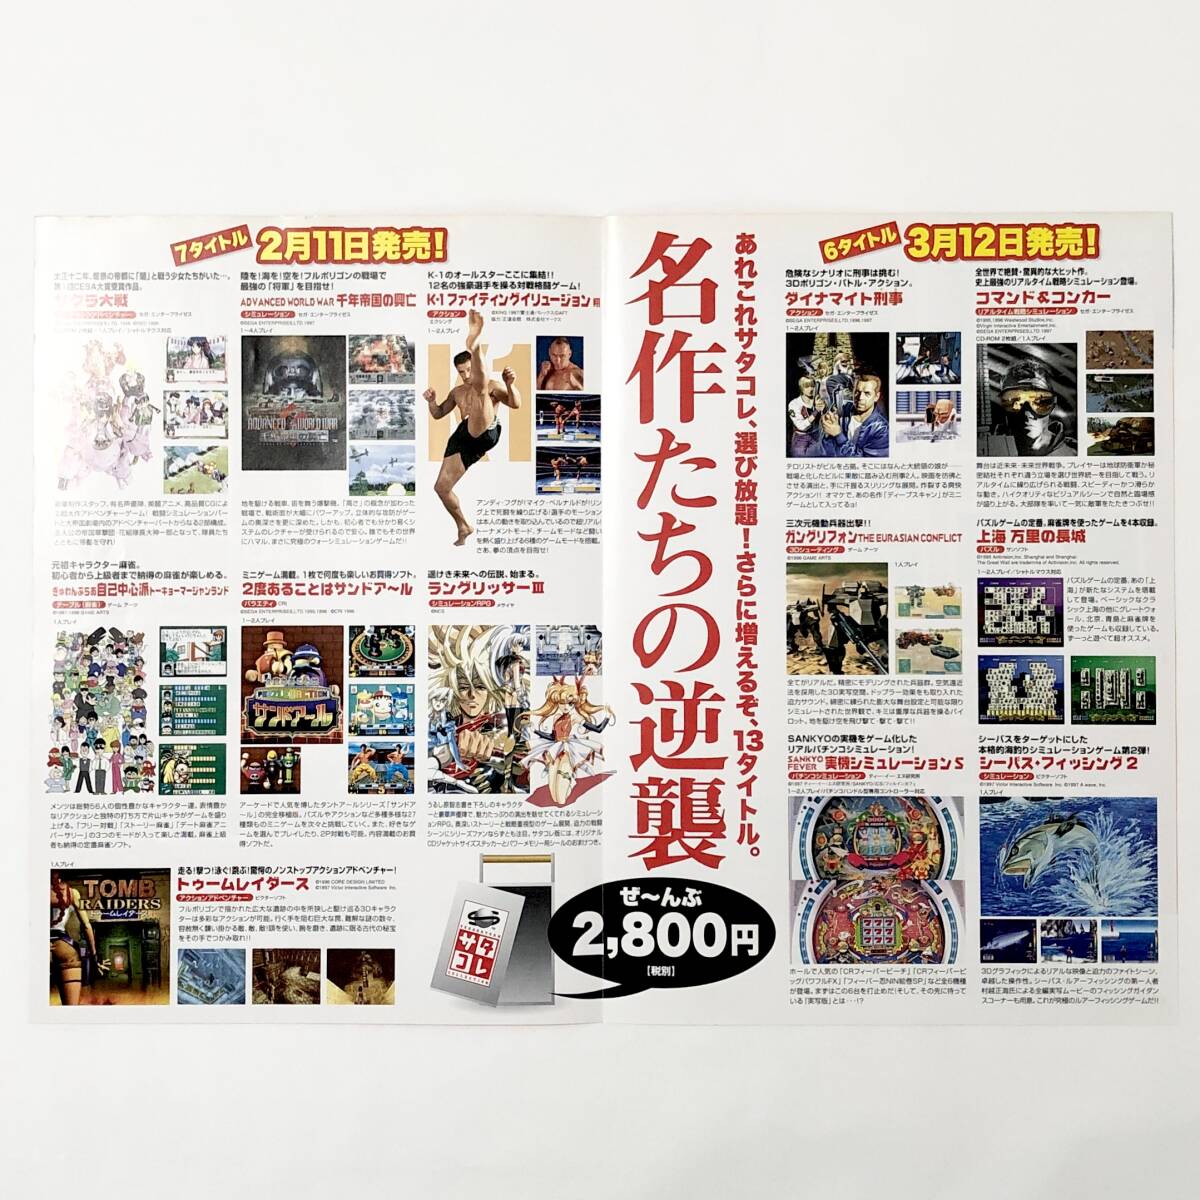 セガサターン サタコレ 新作カタログ A4サイズ チラシ 痛みあり 冊子 フライヤー Sega Saturn Collection / Satakore Promo Ad Flyer_画像5